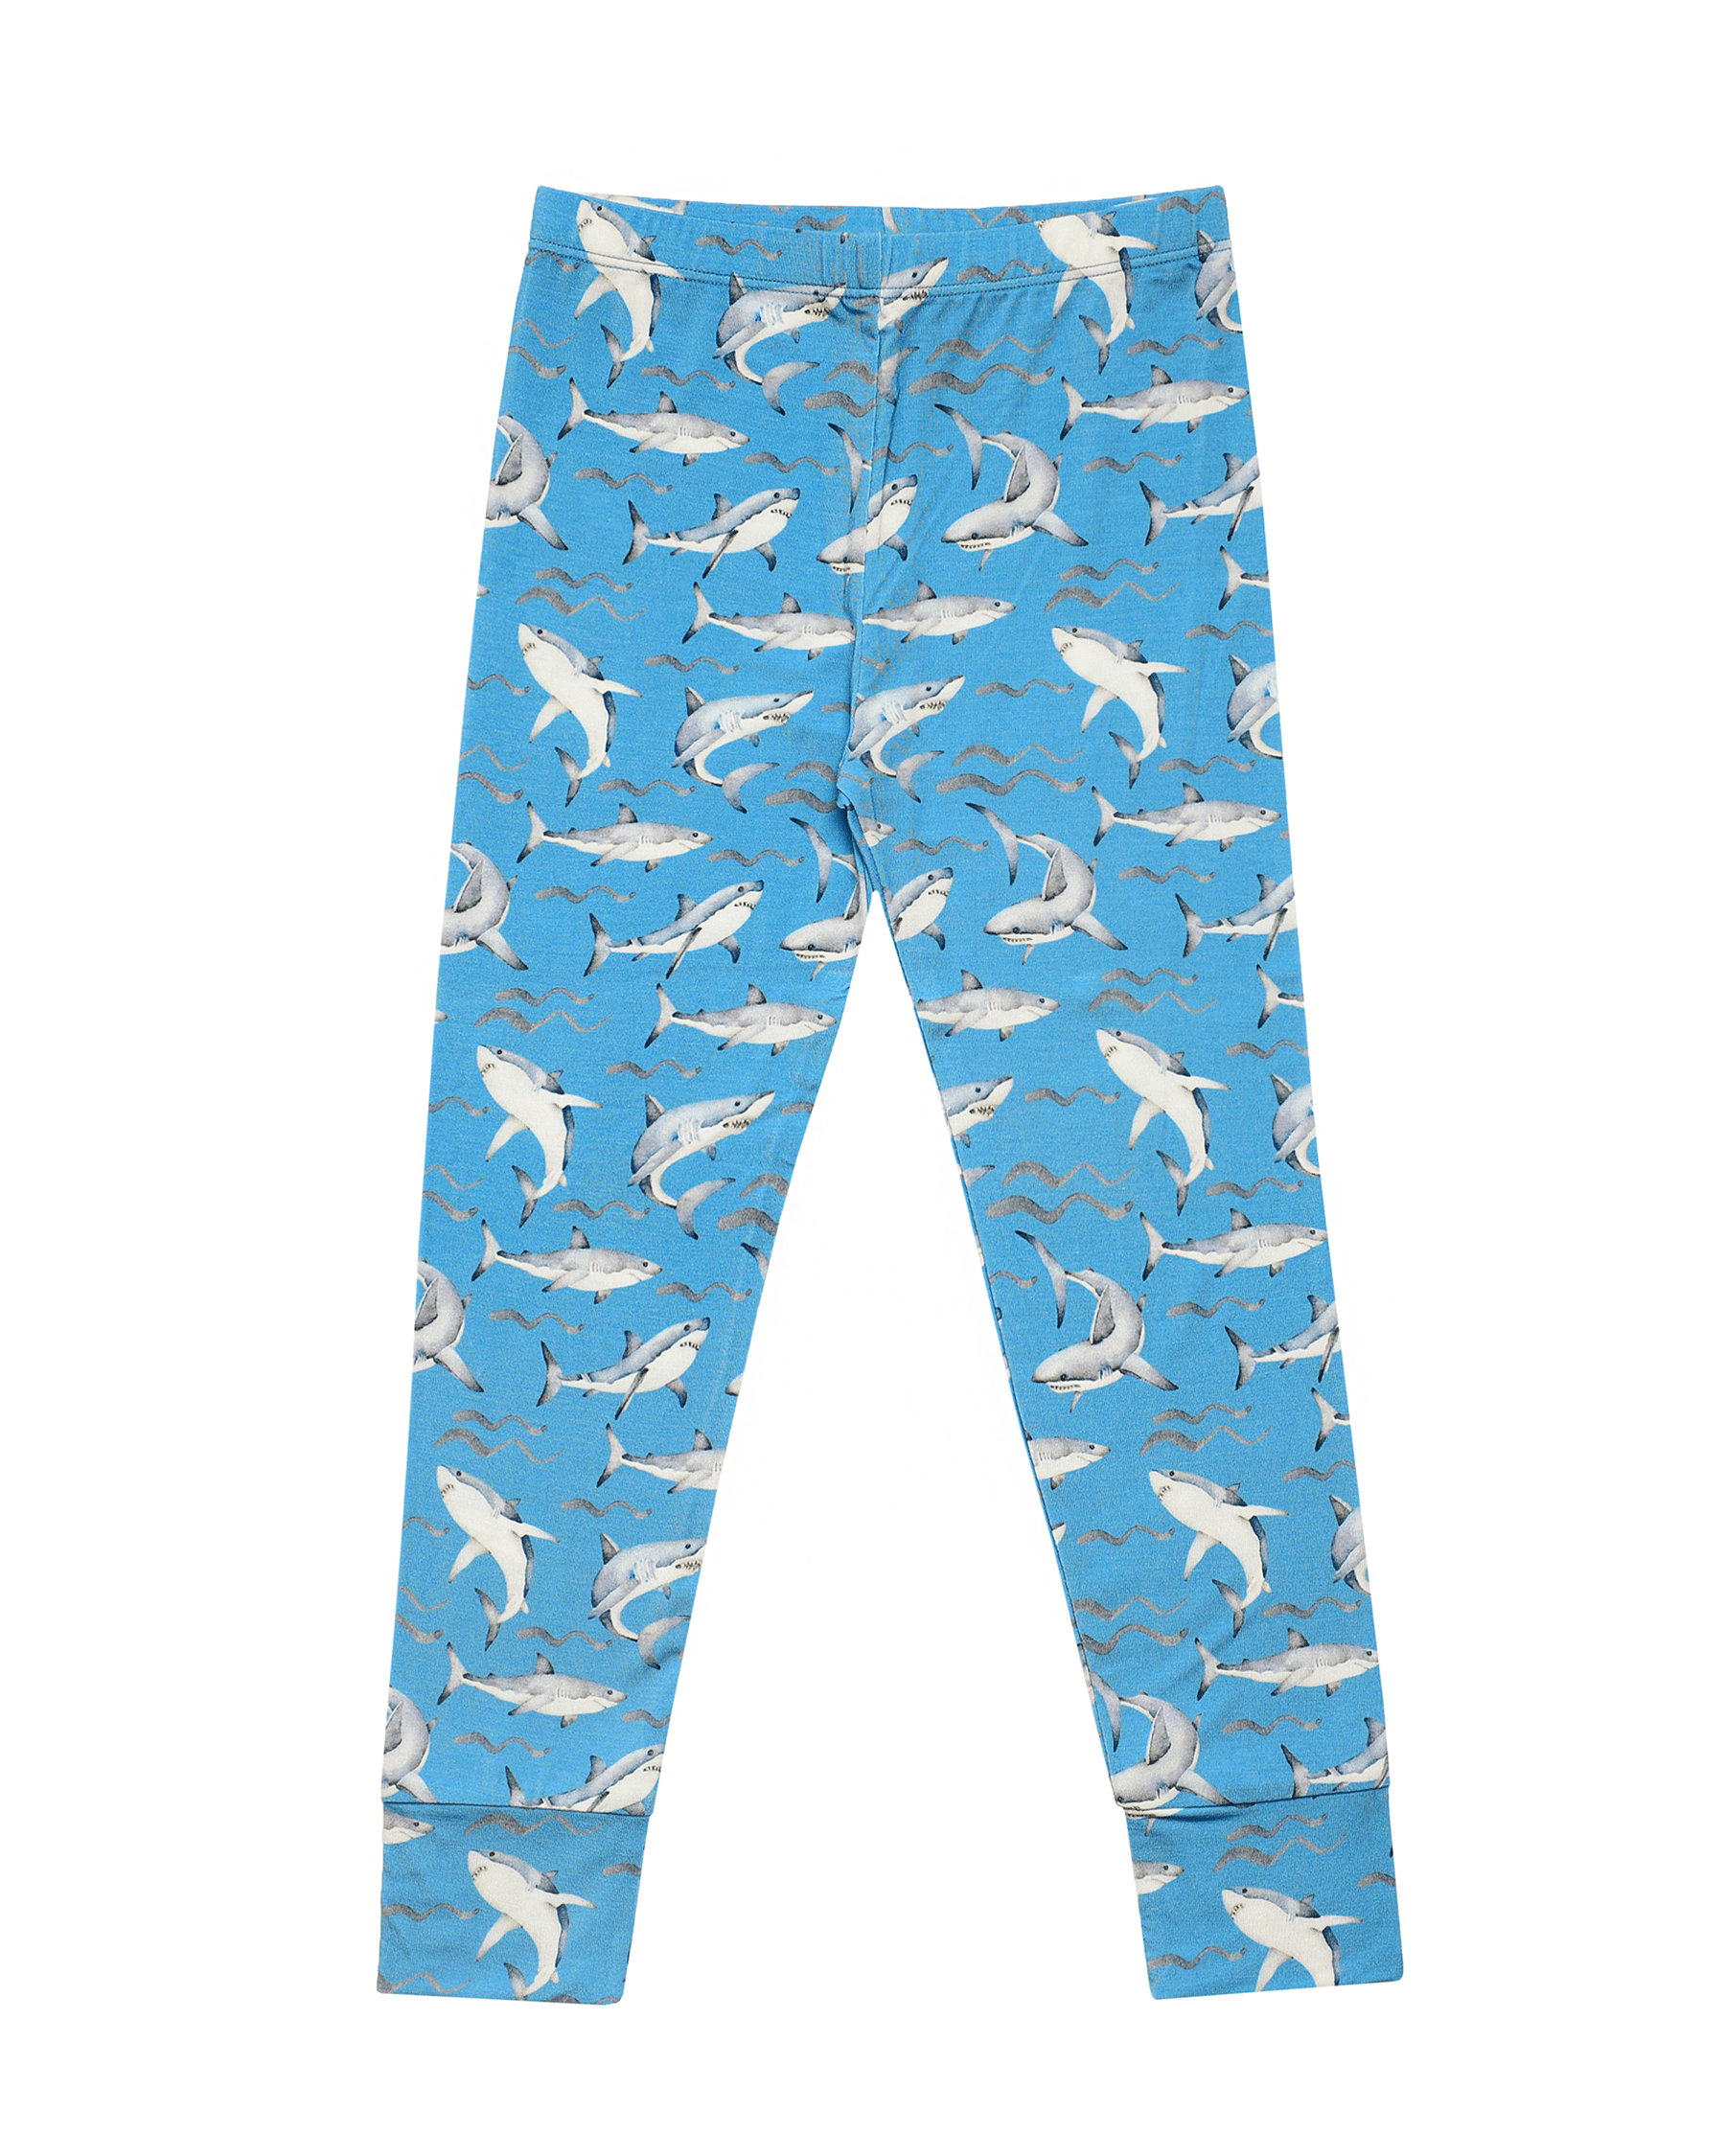 Shark Pajama Set